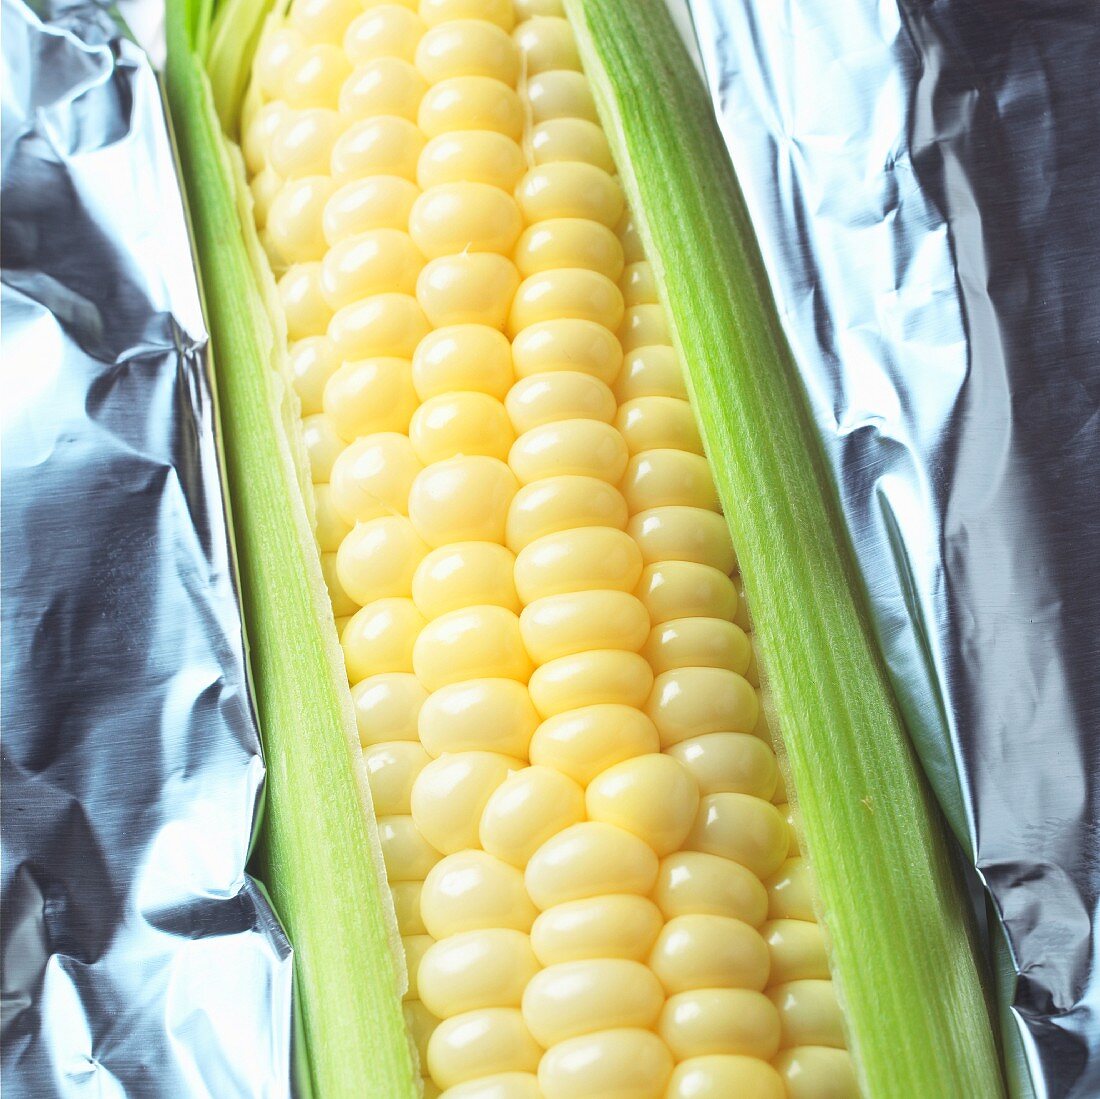 A corn cob in foil